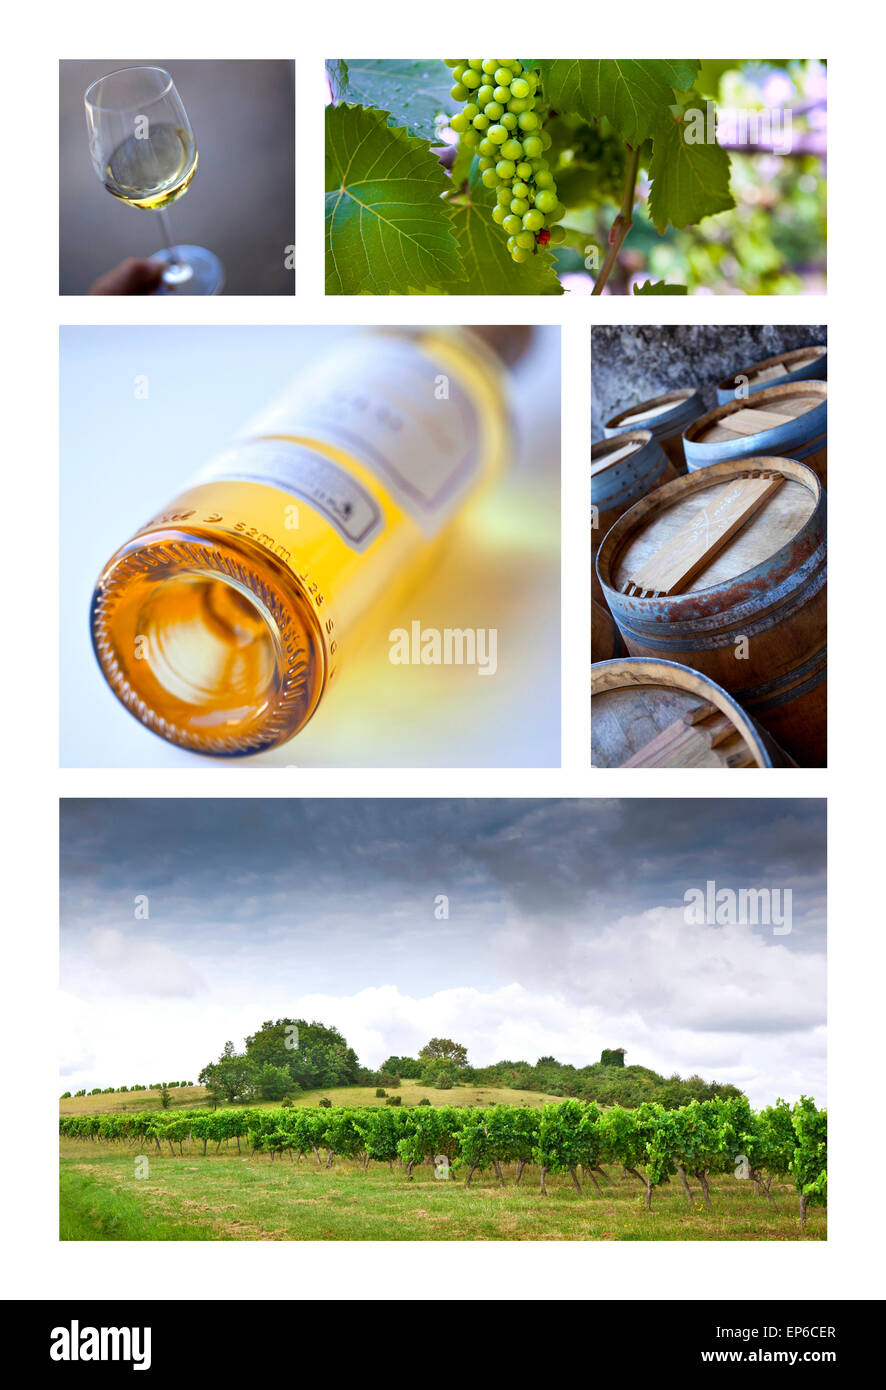 La Viticulture et vineries françaises sur un collage Banque D'Images